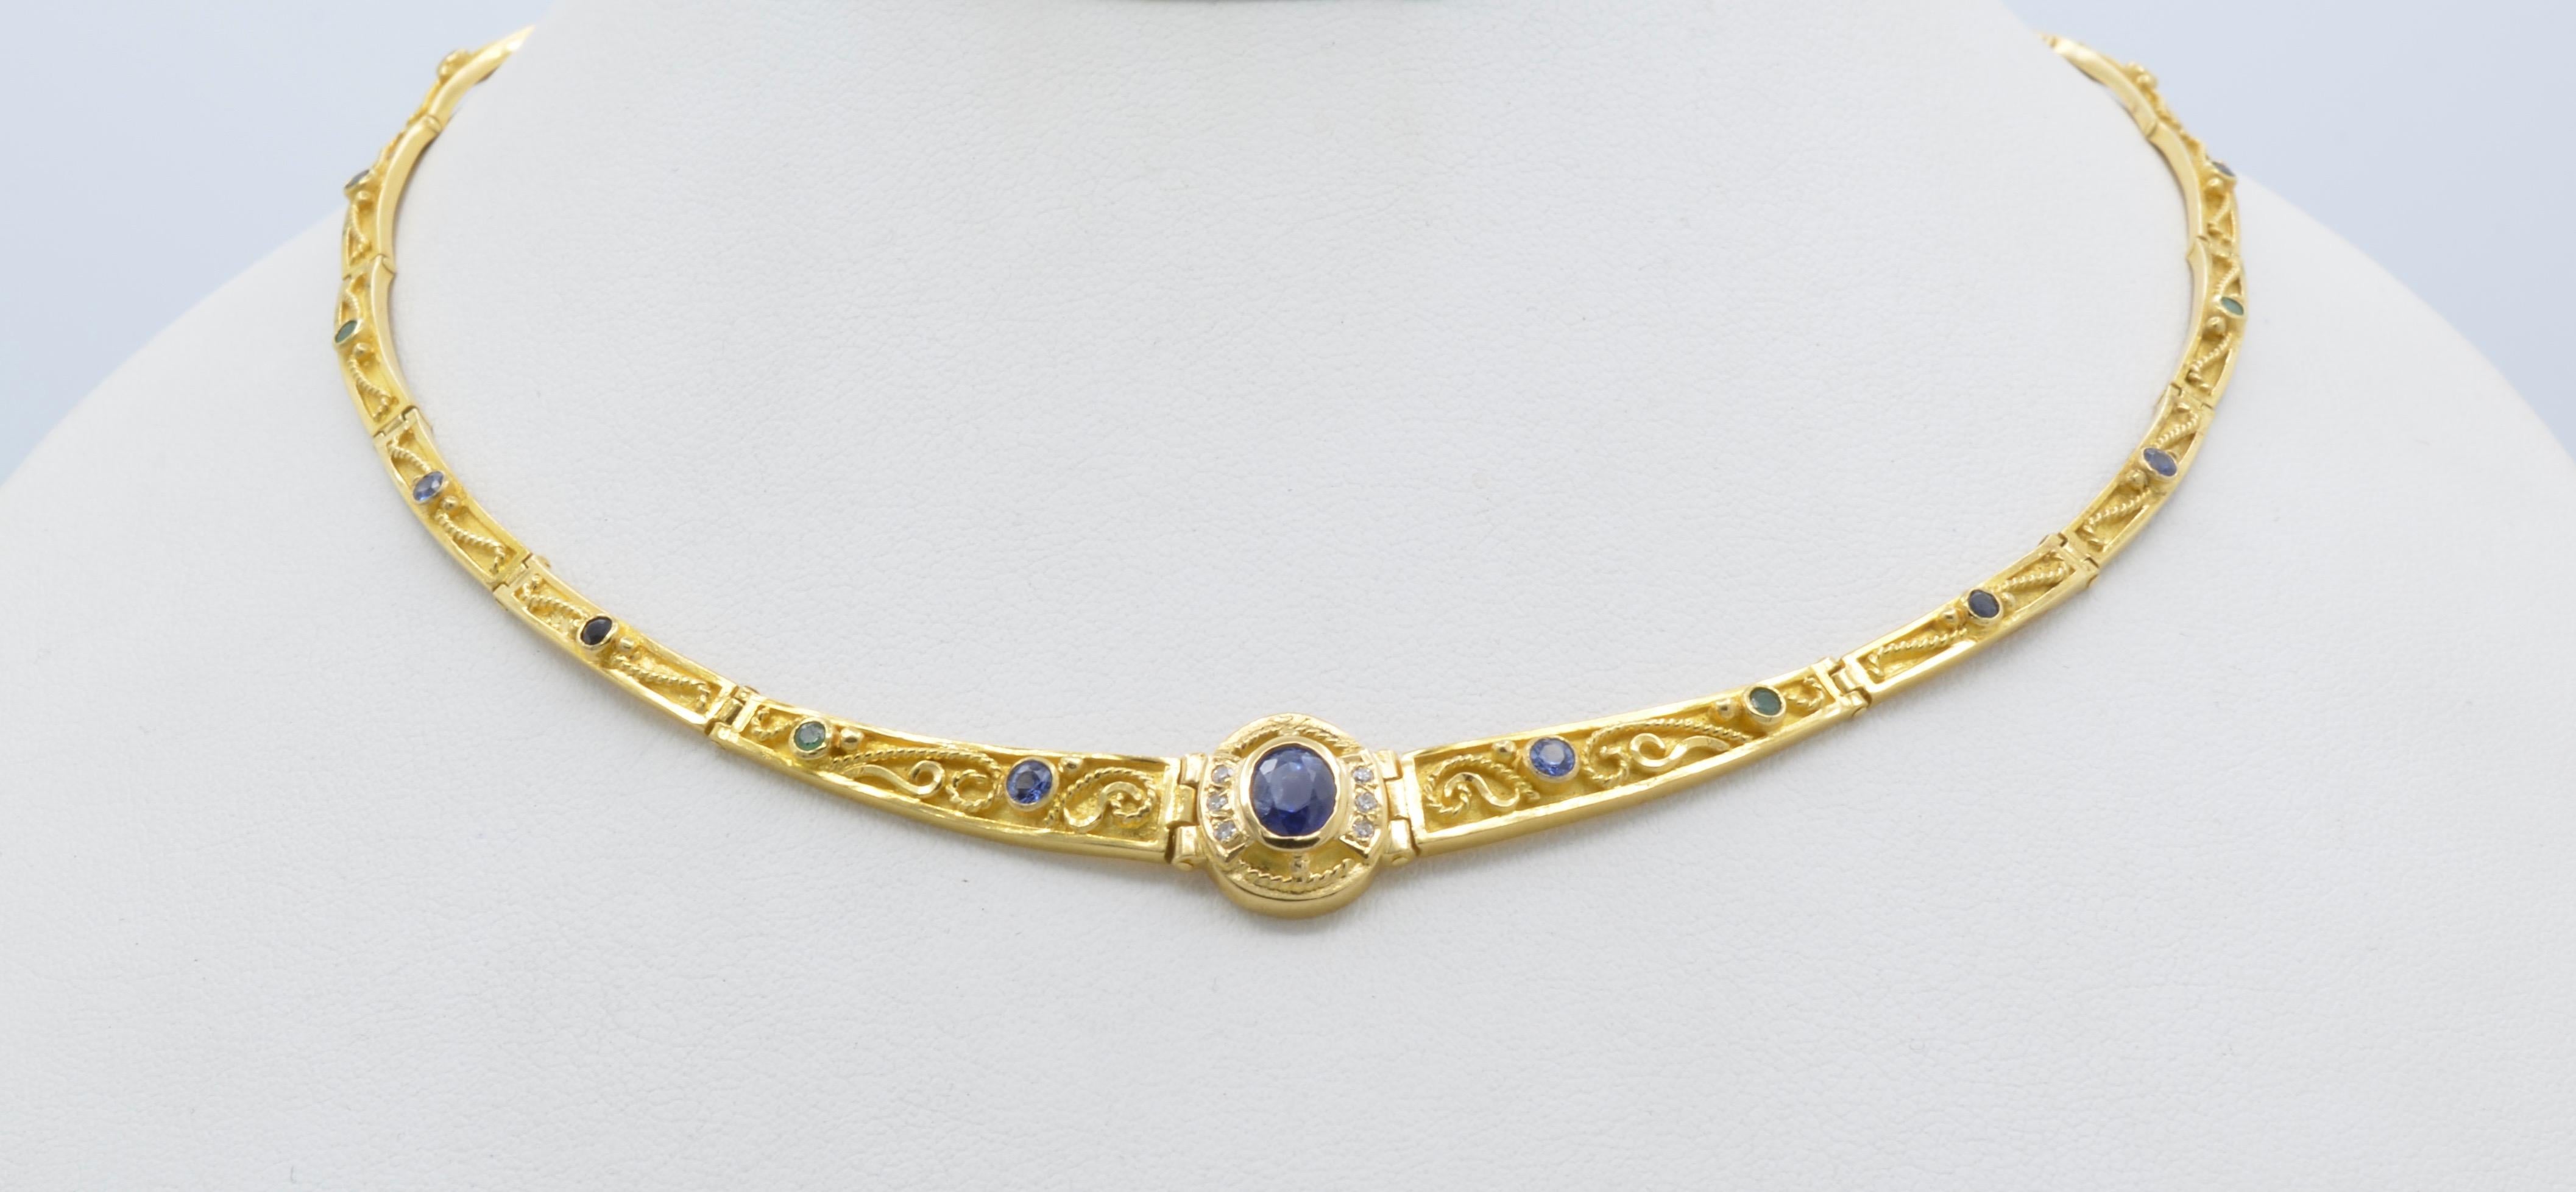 Dieses griechische Collier aus 18 Karat Gelbgold und 1,1 Karat blauem Saphir legt sich elegant und perfekt um den Hals. Rund wie eine Tiara ruhen die geschwungenen Glieder und haben mehr Sichtbarkeit, um ihre komplizierten Details aus bunten Steinen